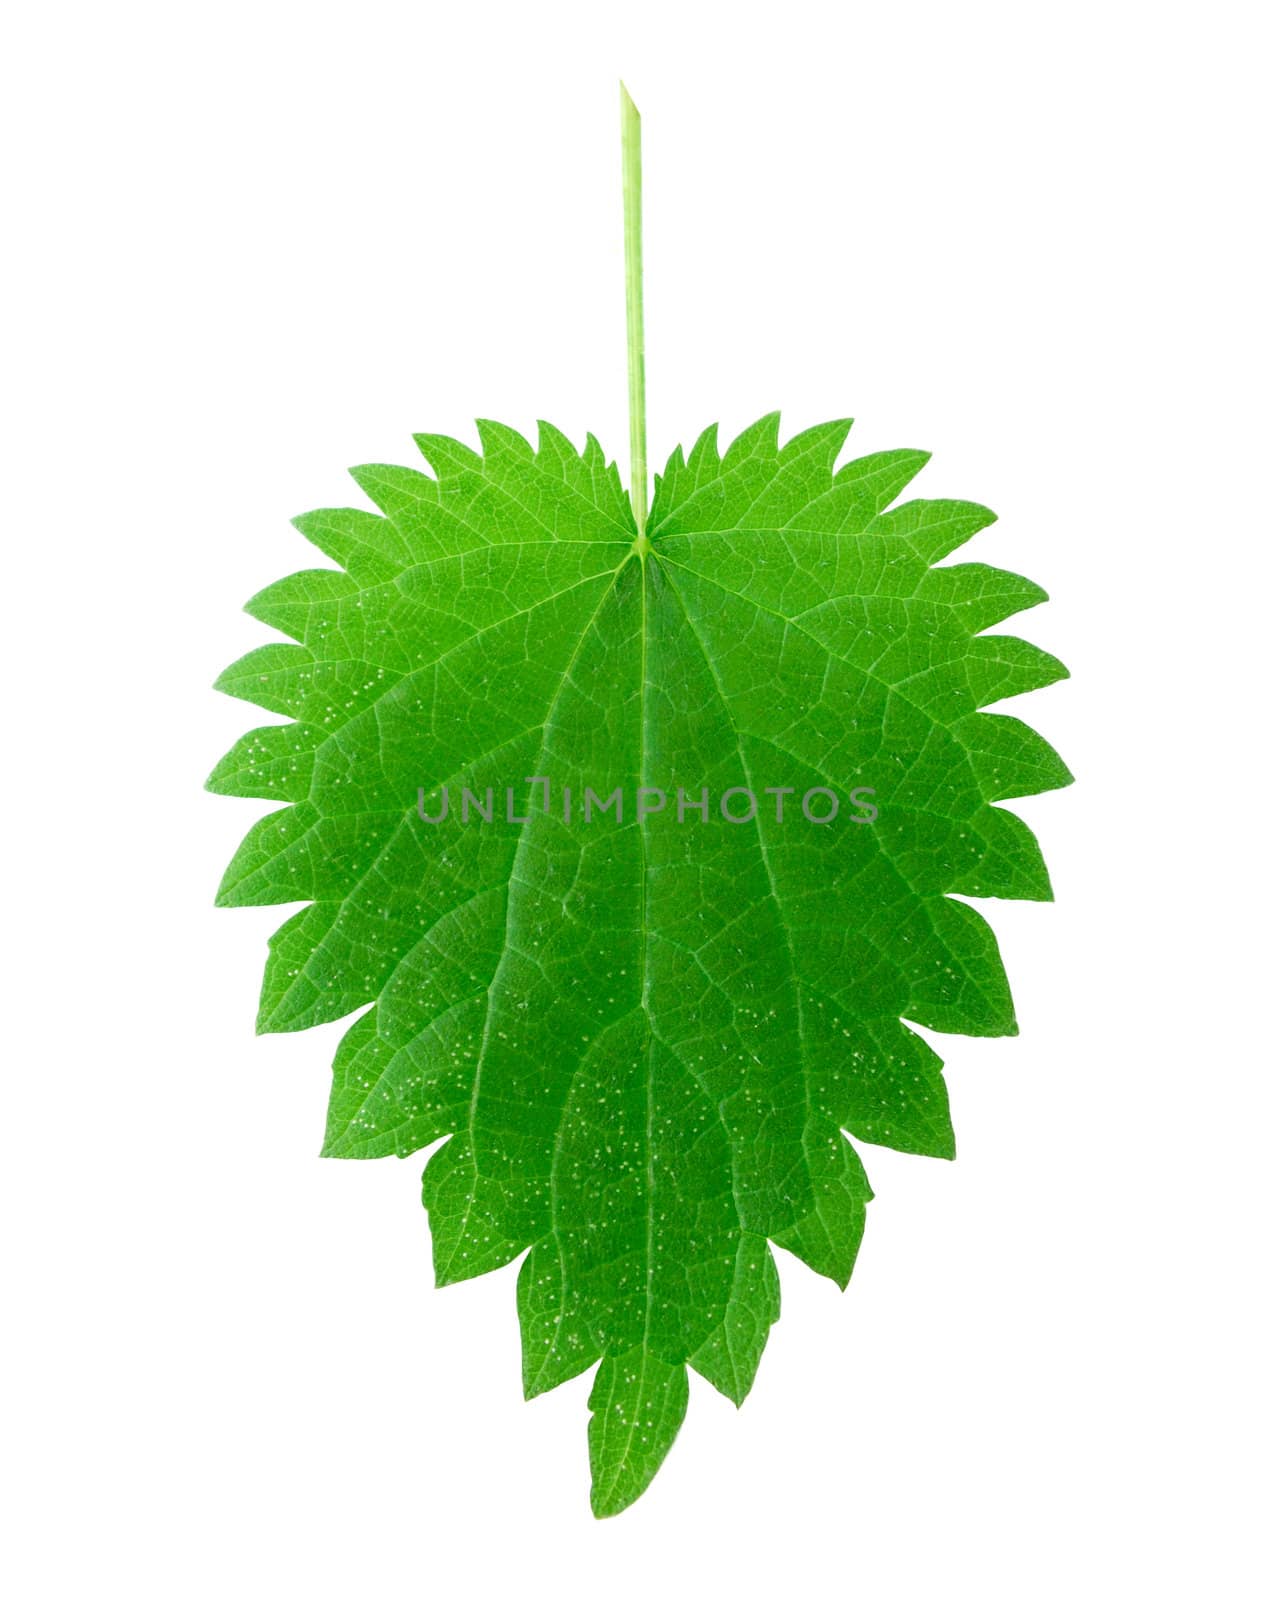 stinging nettle leaf isolated on white background